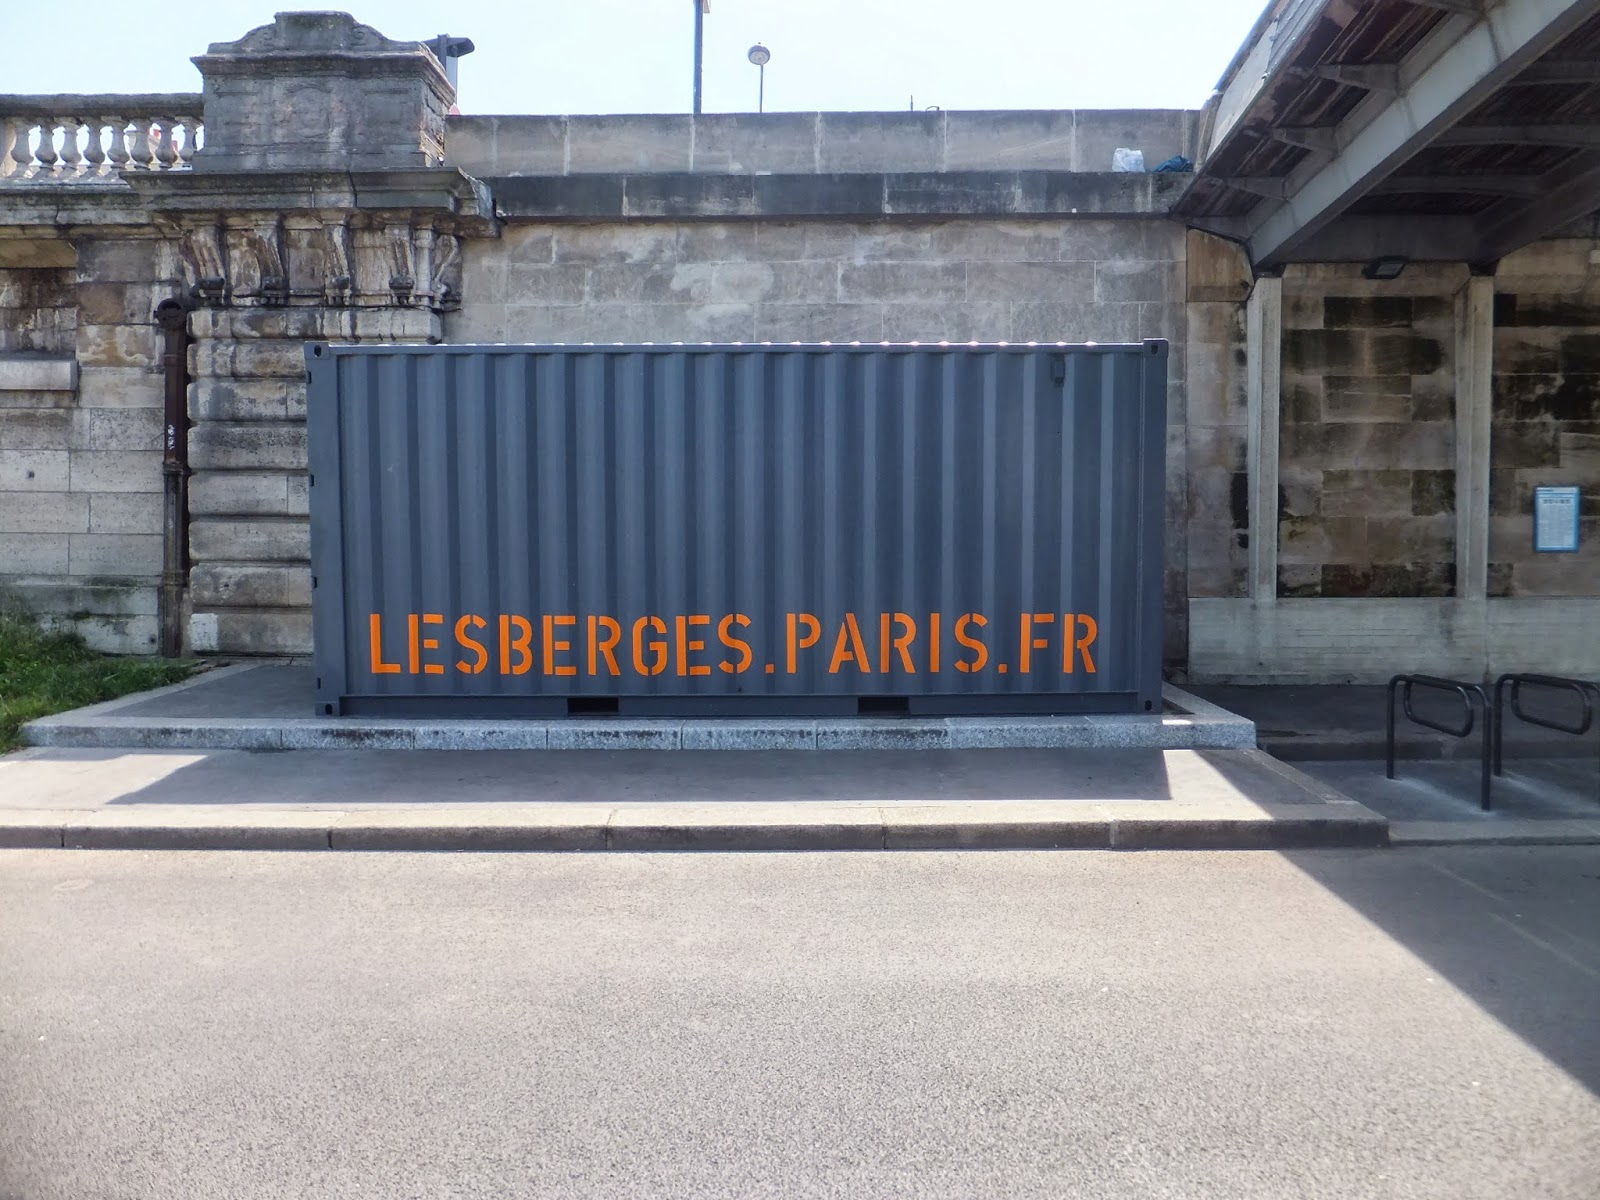 Berges de la Seine, Sena, París, Elisa N, Blog de Viajes, Lifestyle, Travel